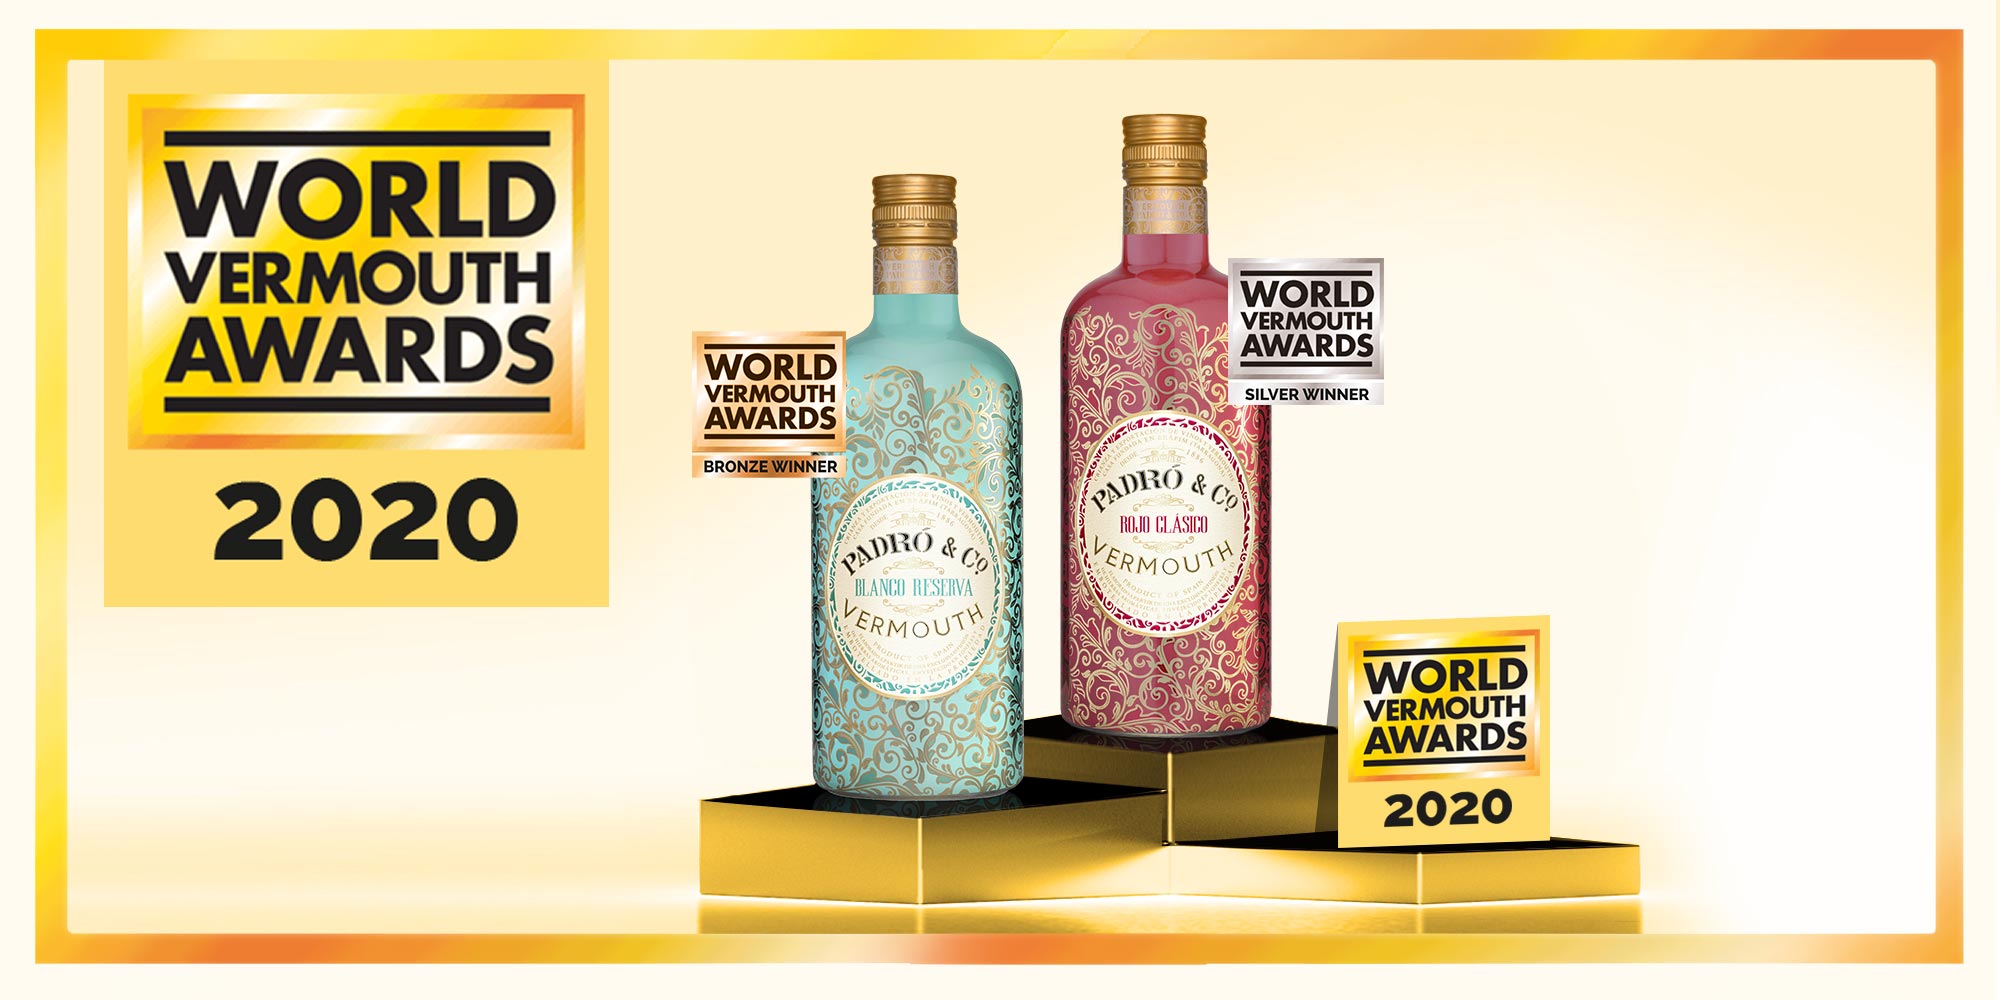 Los cinco Padró & Co. en el podio de los World Vermouth Awards